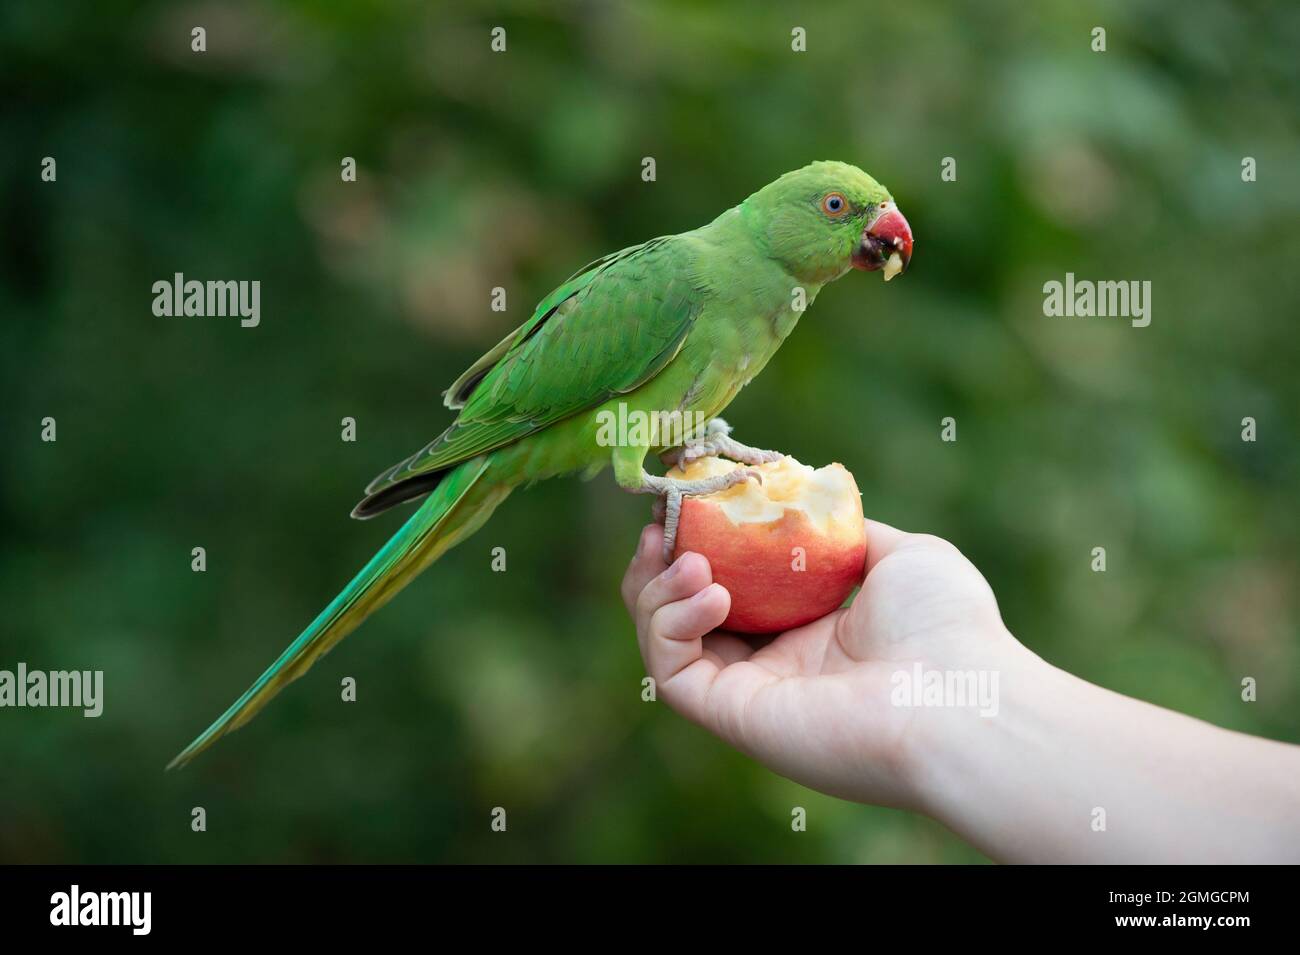 Parakeet femminile con collo ad anello, Psittacula krameri, che si nutrono di mela dalla mano di una persona, Hyde Park, Londra, Regno Unito, Isole britanniche Foto Stock